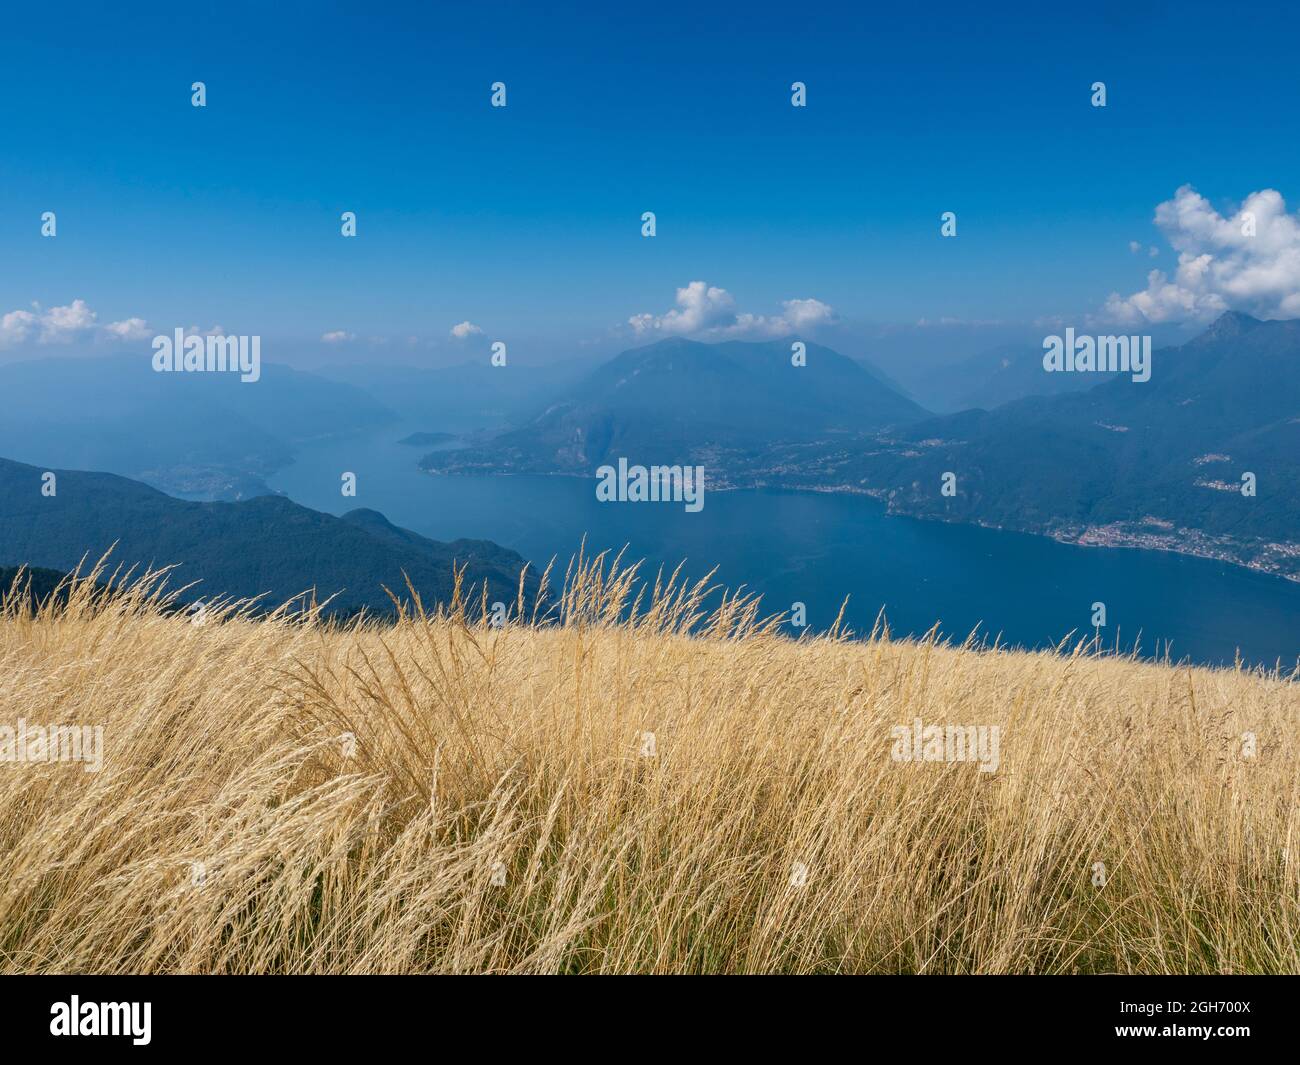 Landscape of Lake Como from Alpe Giumello Stock Photo